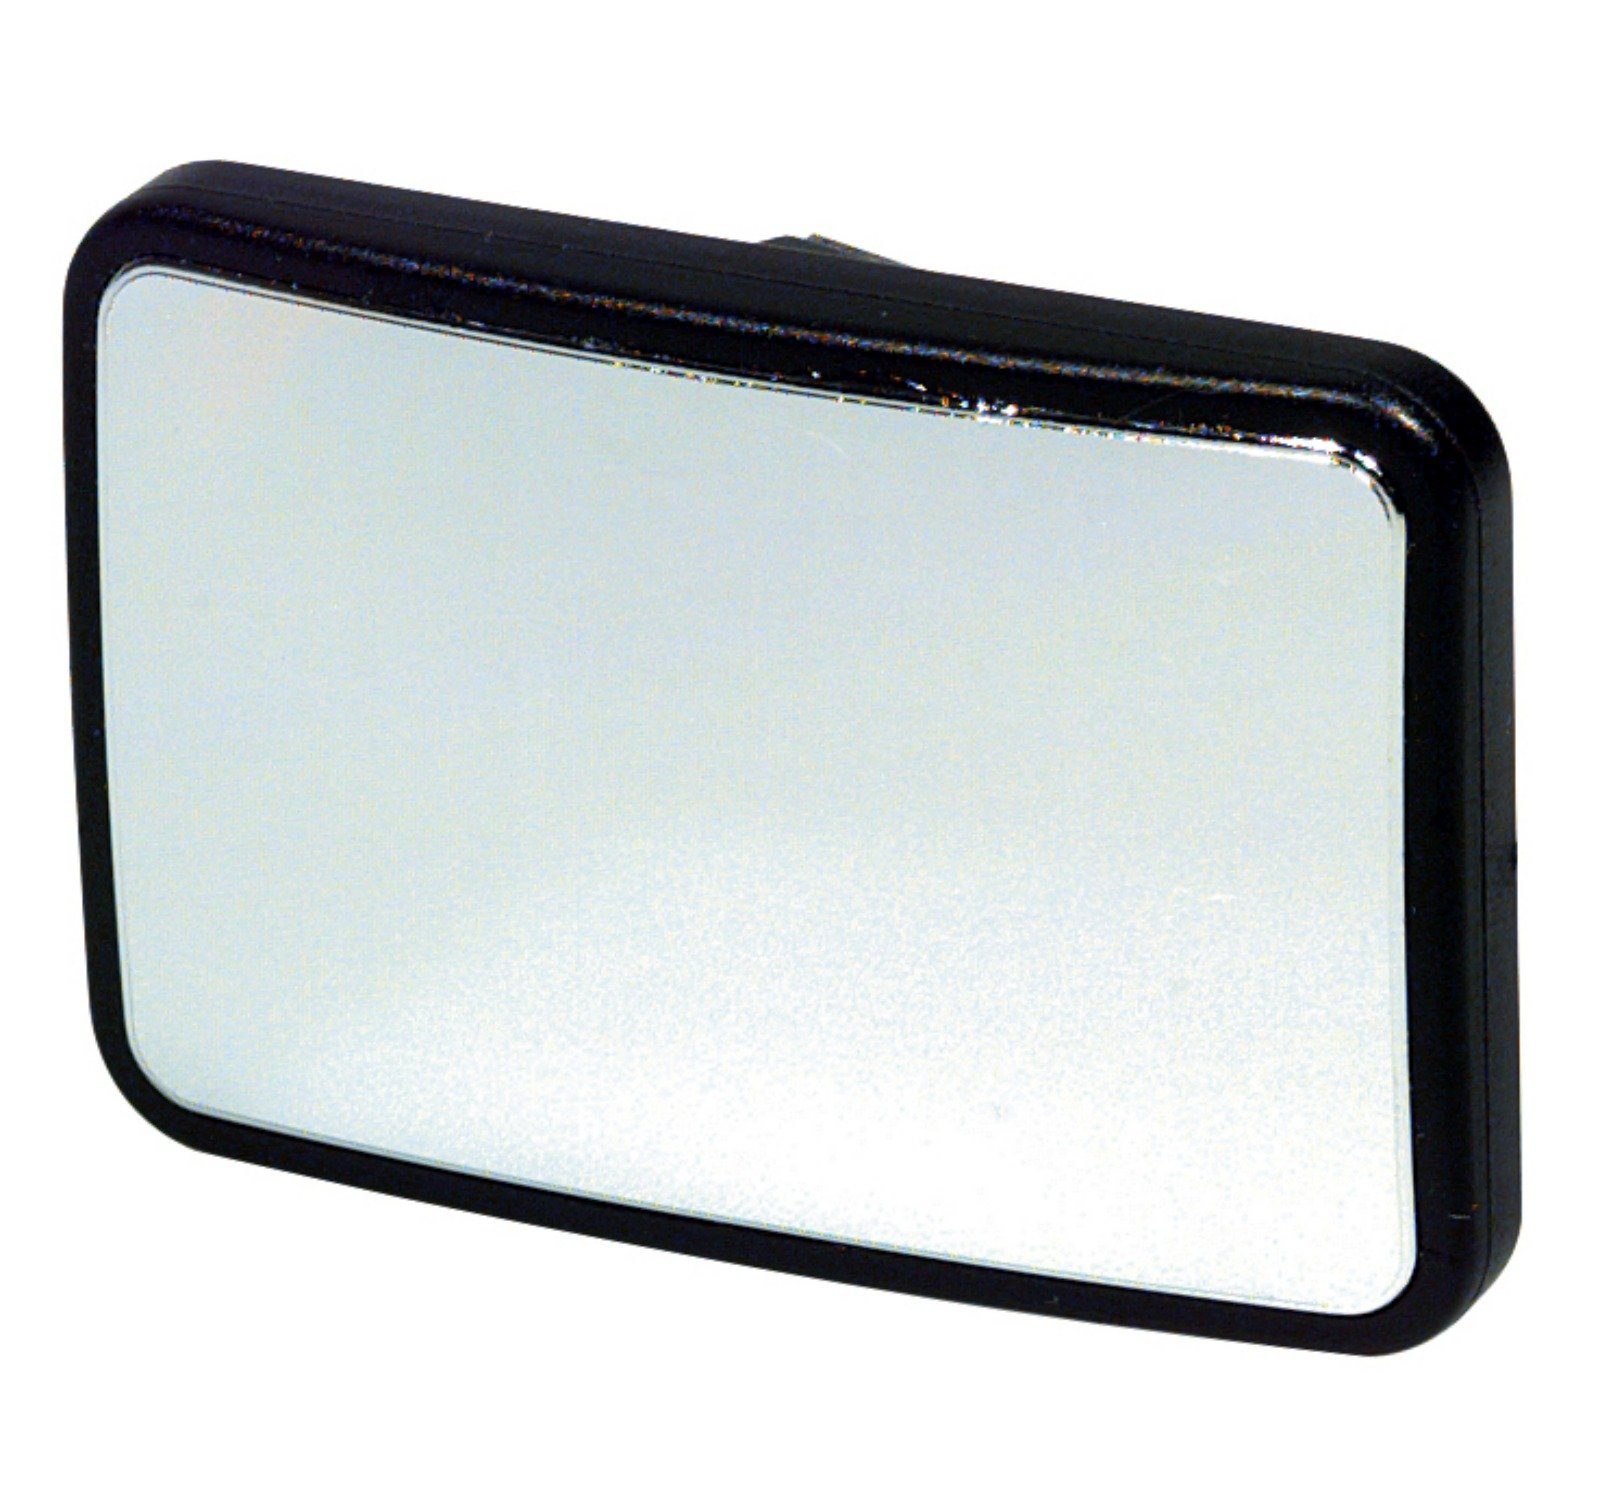 Toter Zusatz HR-IMOTION Spiegelaufsatz aufkleben Winkel Aufsatz zum Zusatzspiegel Spiegel